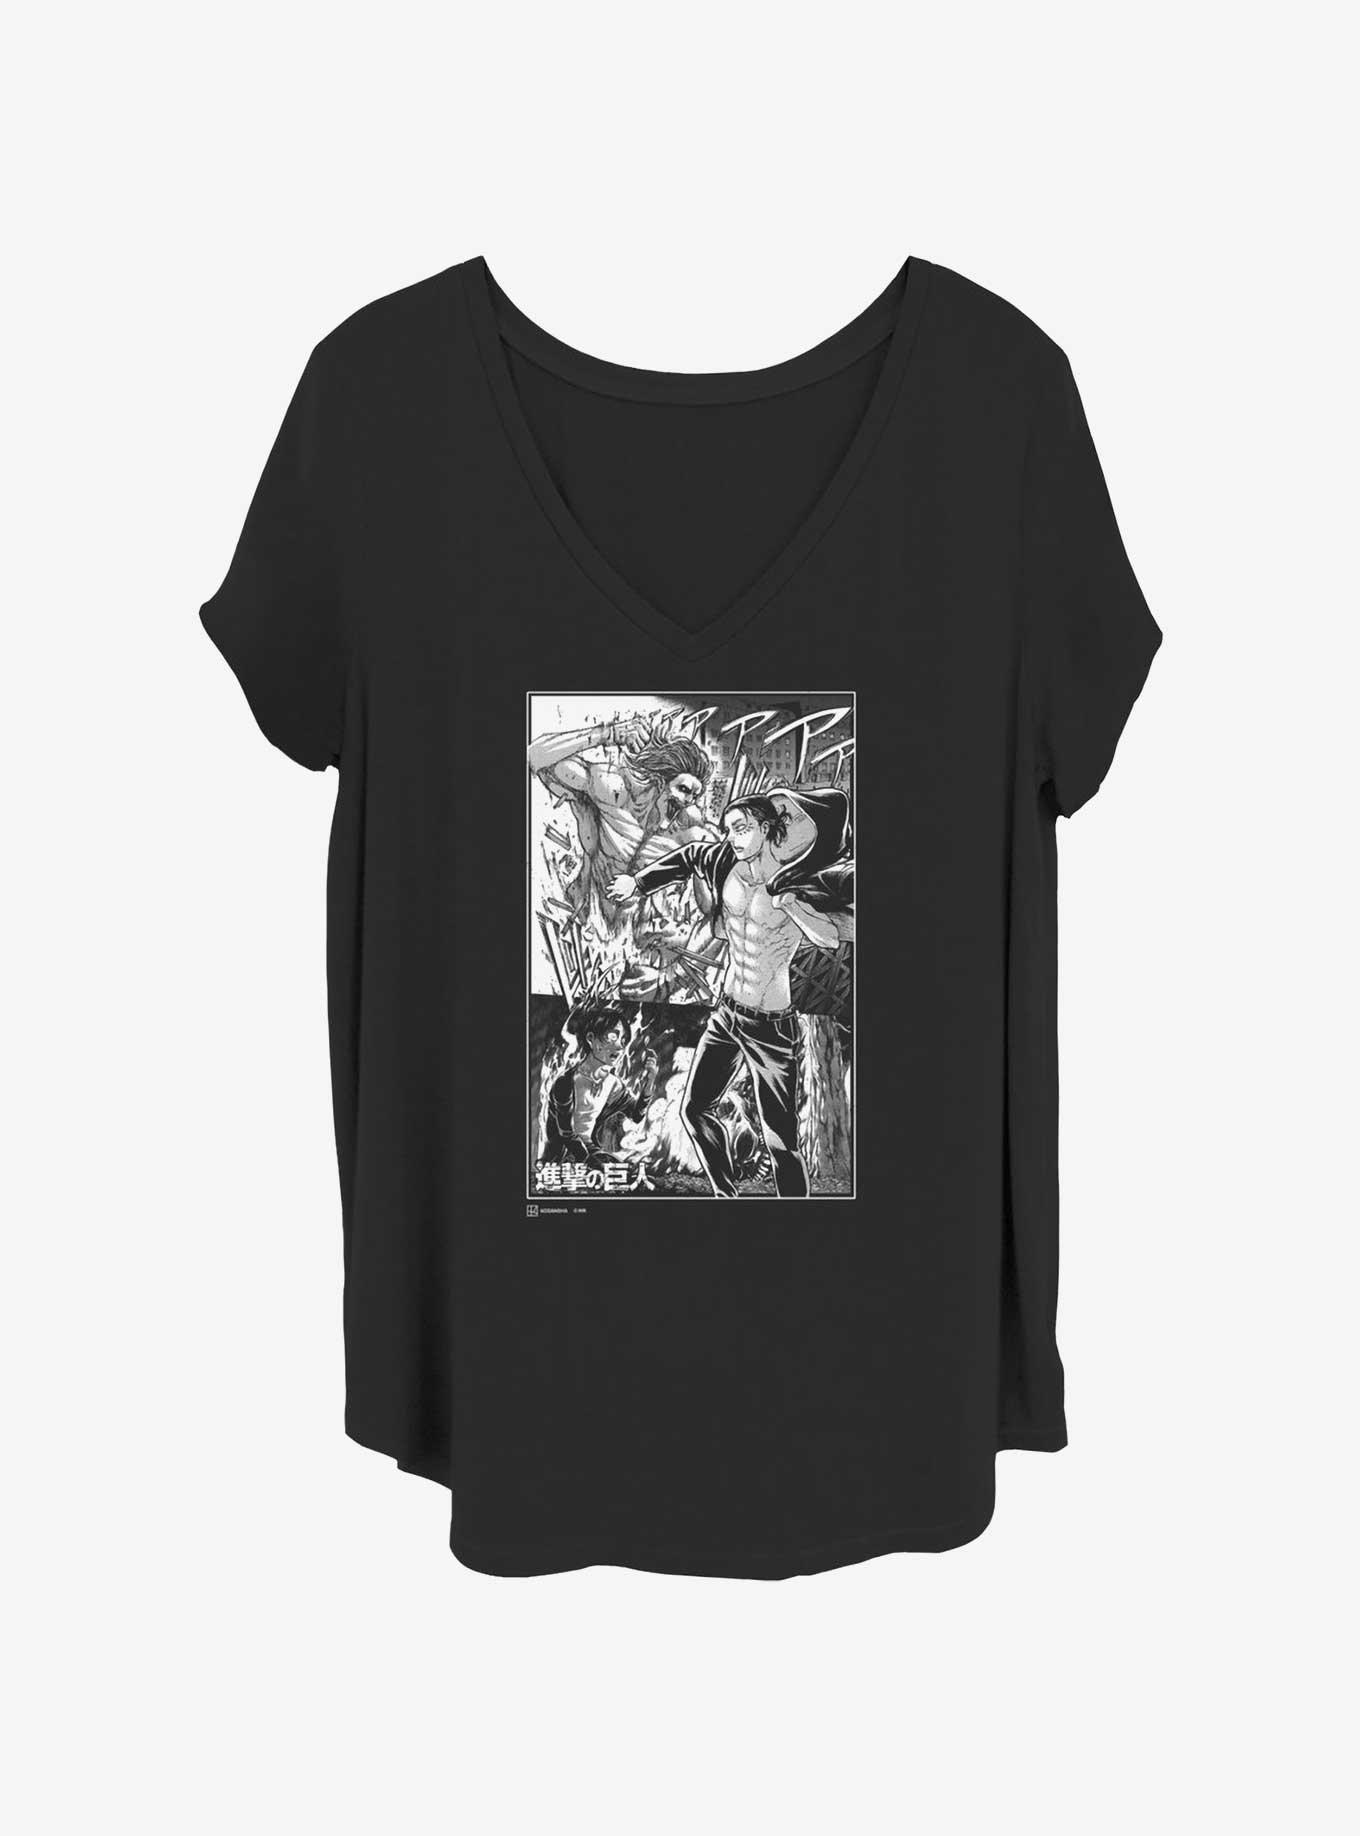 Attack on Titan Eren Manga Collage Girls T-Shirt Plus Size, BLACK, hi-res